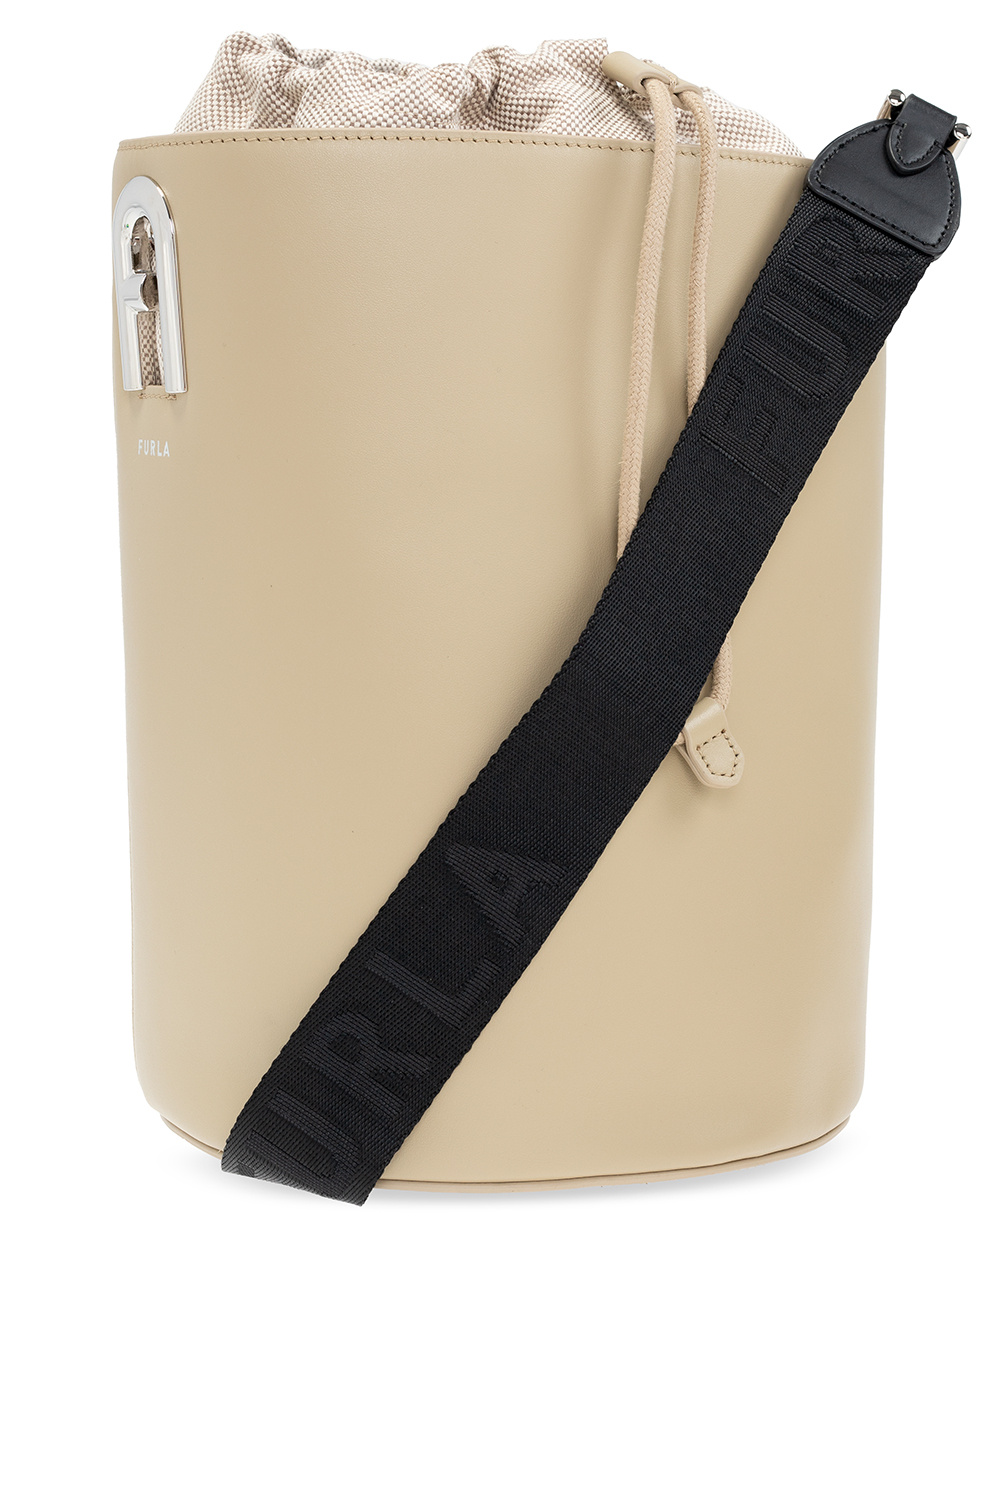 Furla ‘Lipari’ shoulder Stand bag